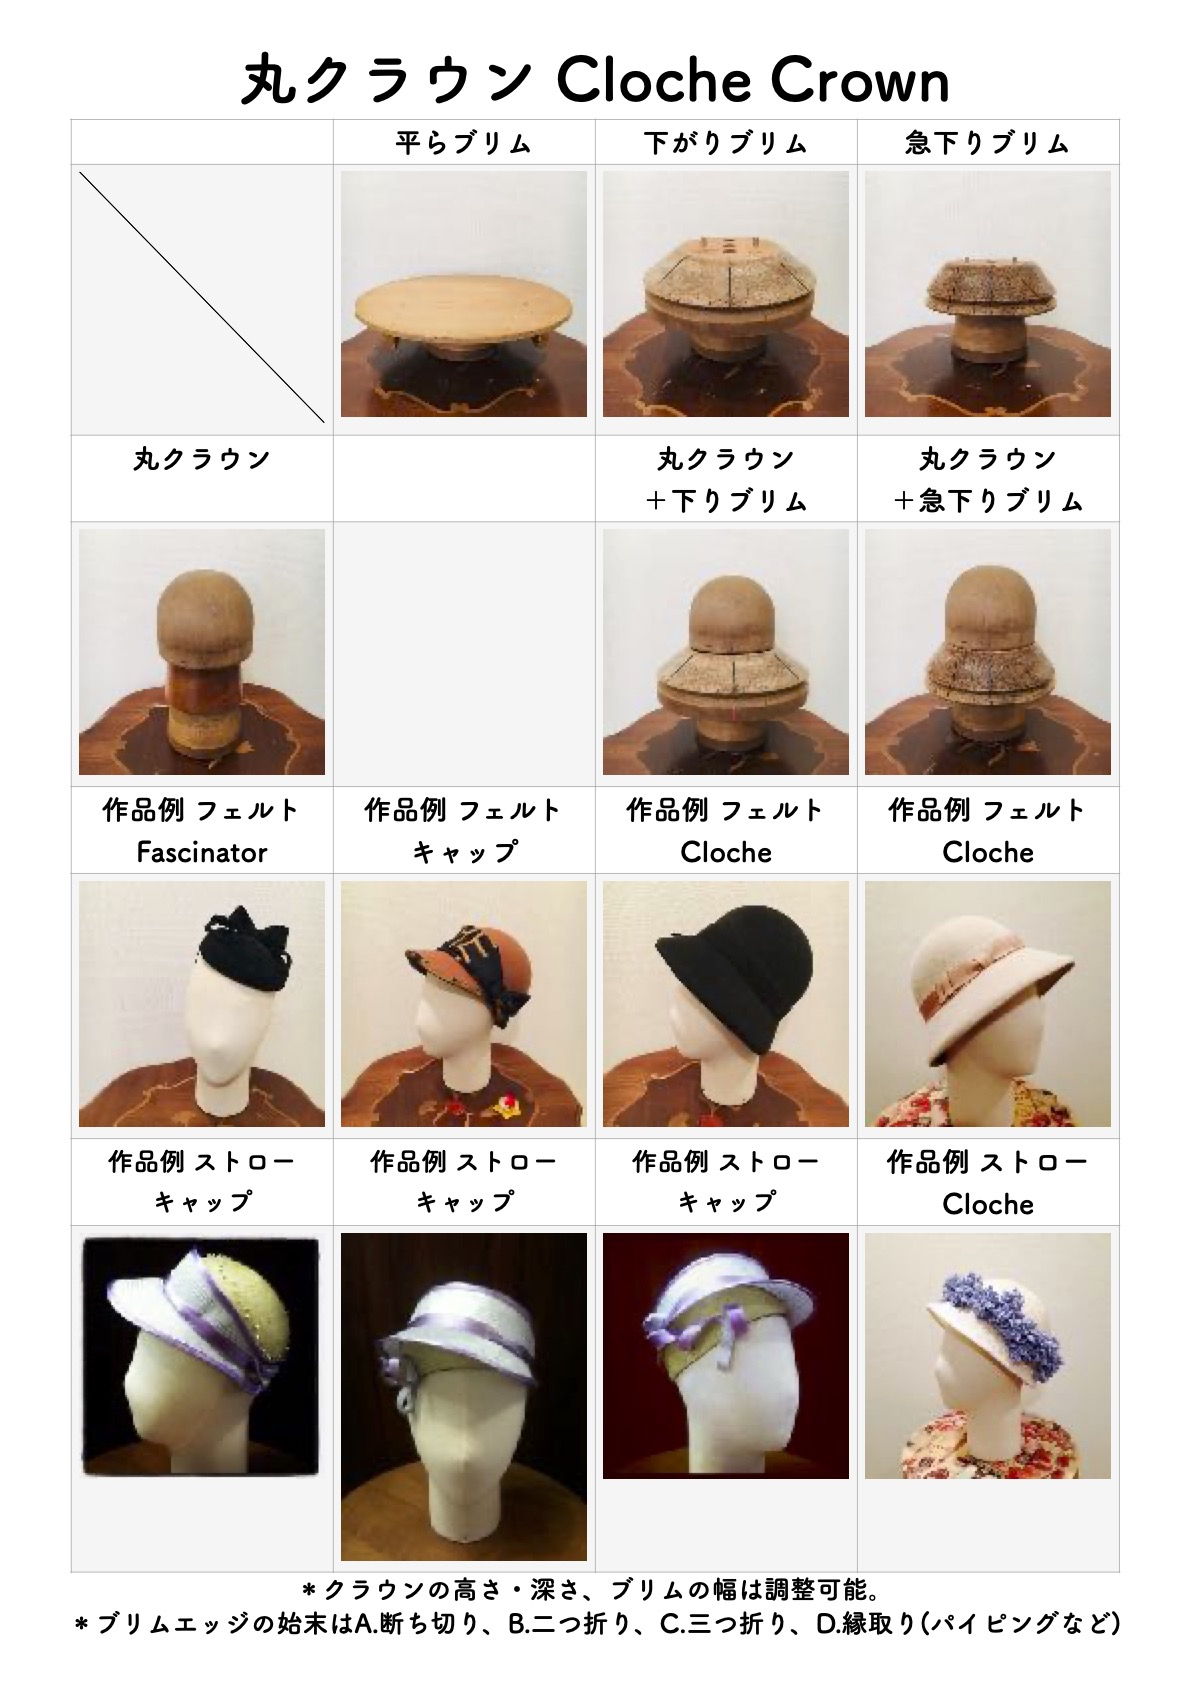 パーツ 4台 帽子 ぼうし 木製 型 形 帽子の型 帽子の形 セット g5dha-m24640935597 ルカリ